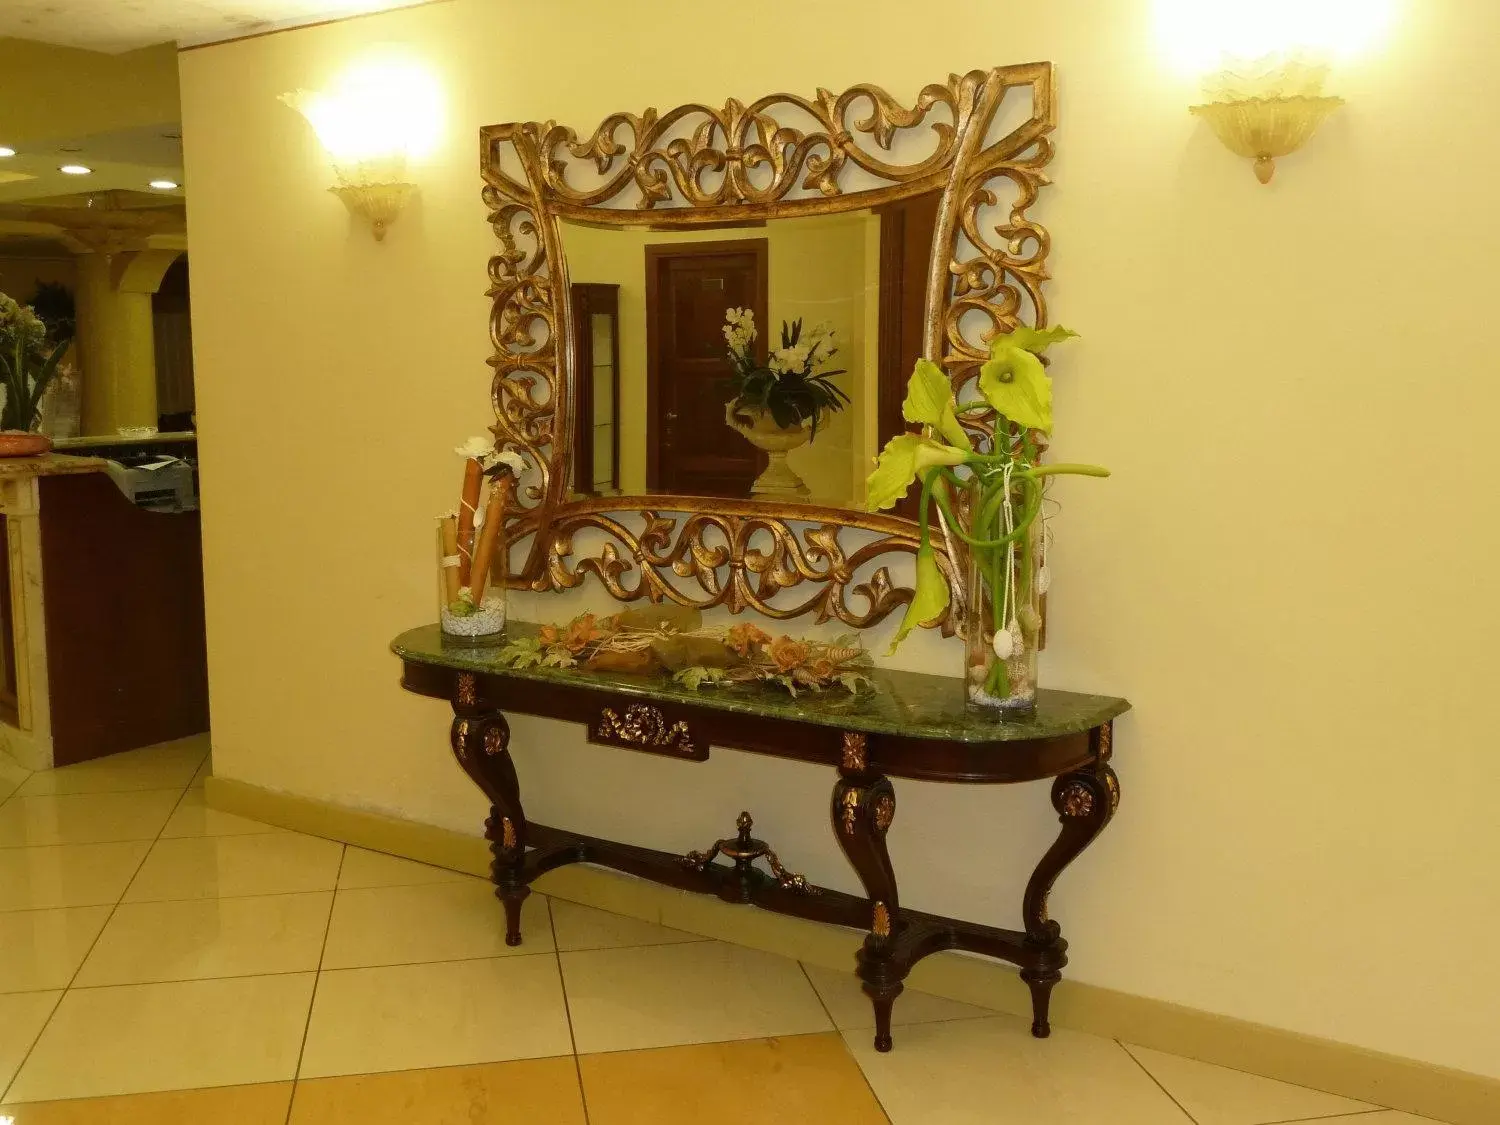 Lobby or reception in Hotel Roscianum Welness SPA